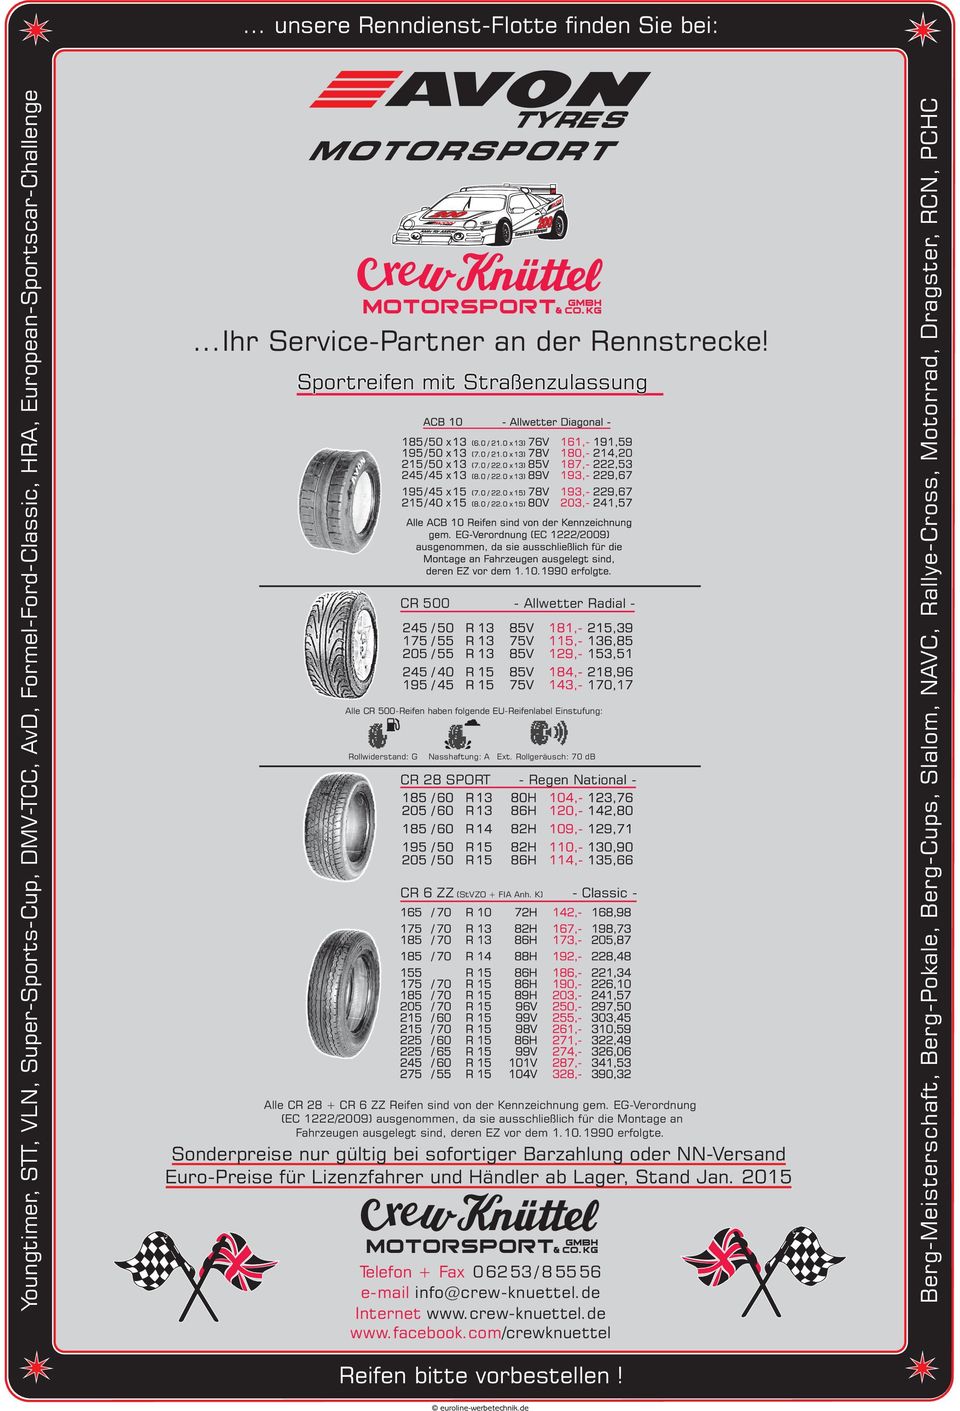 K) - Classic - Alle CR 28 + CR 6 ZZ Reifen sind von der Kennzeichnung gem.